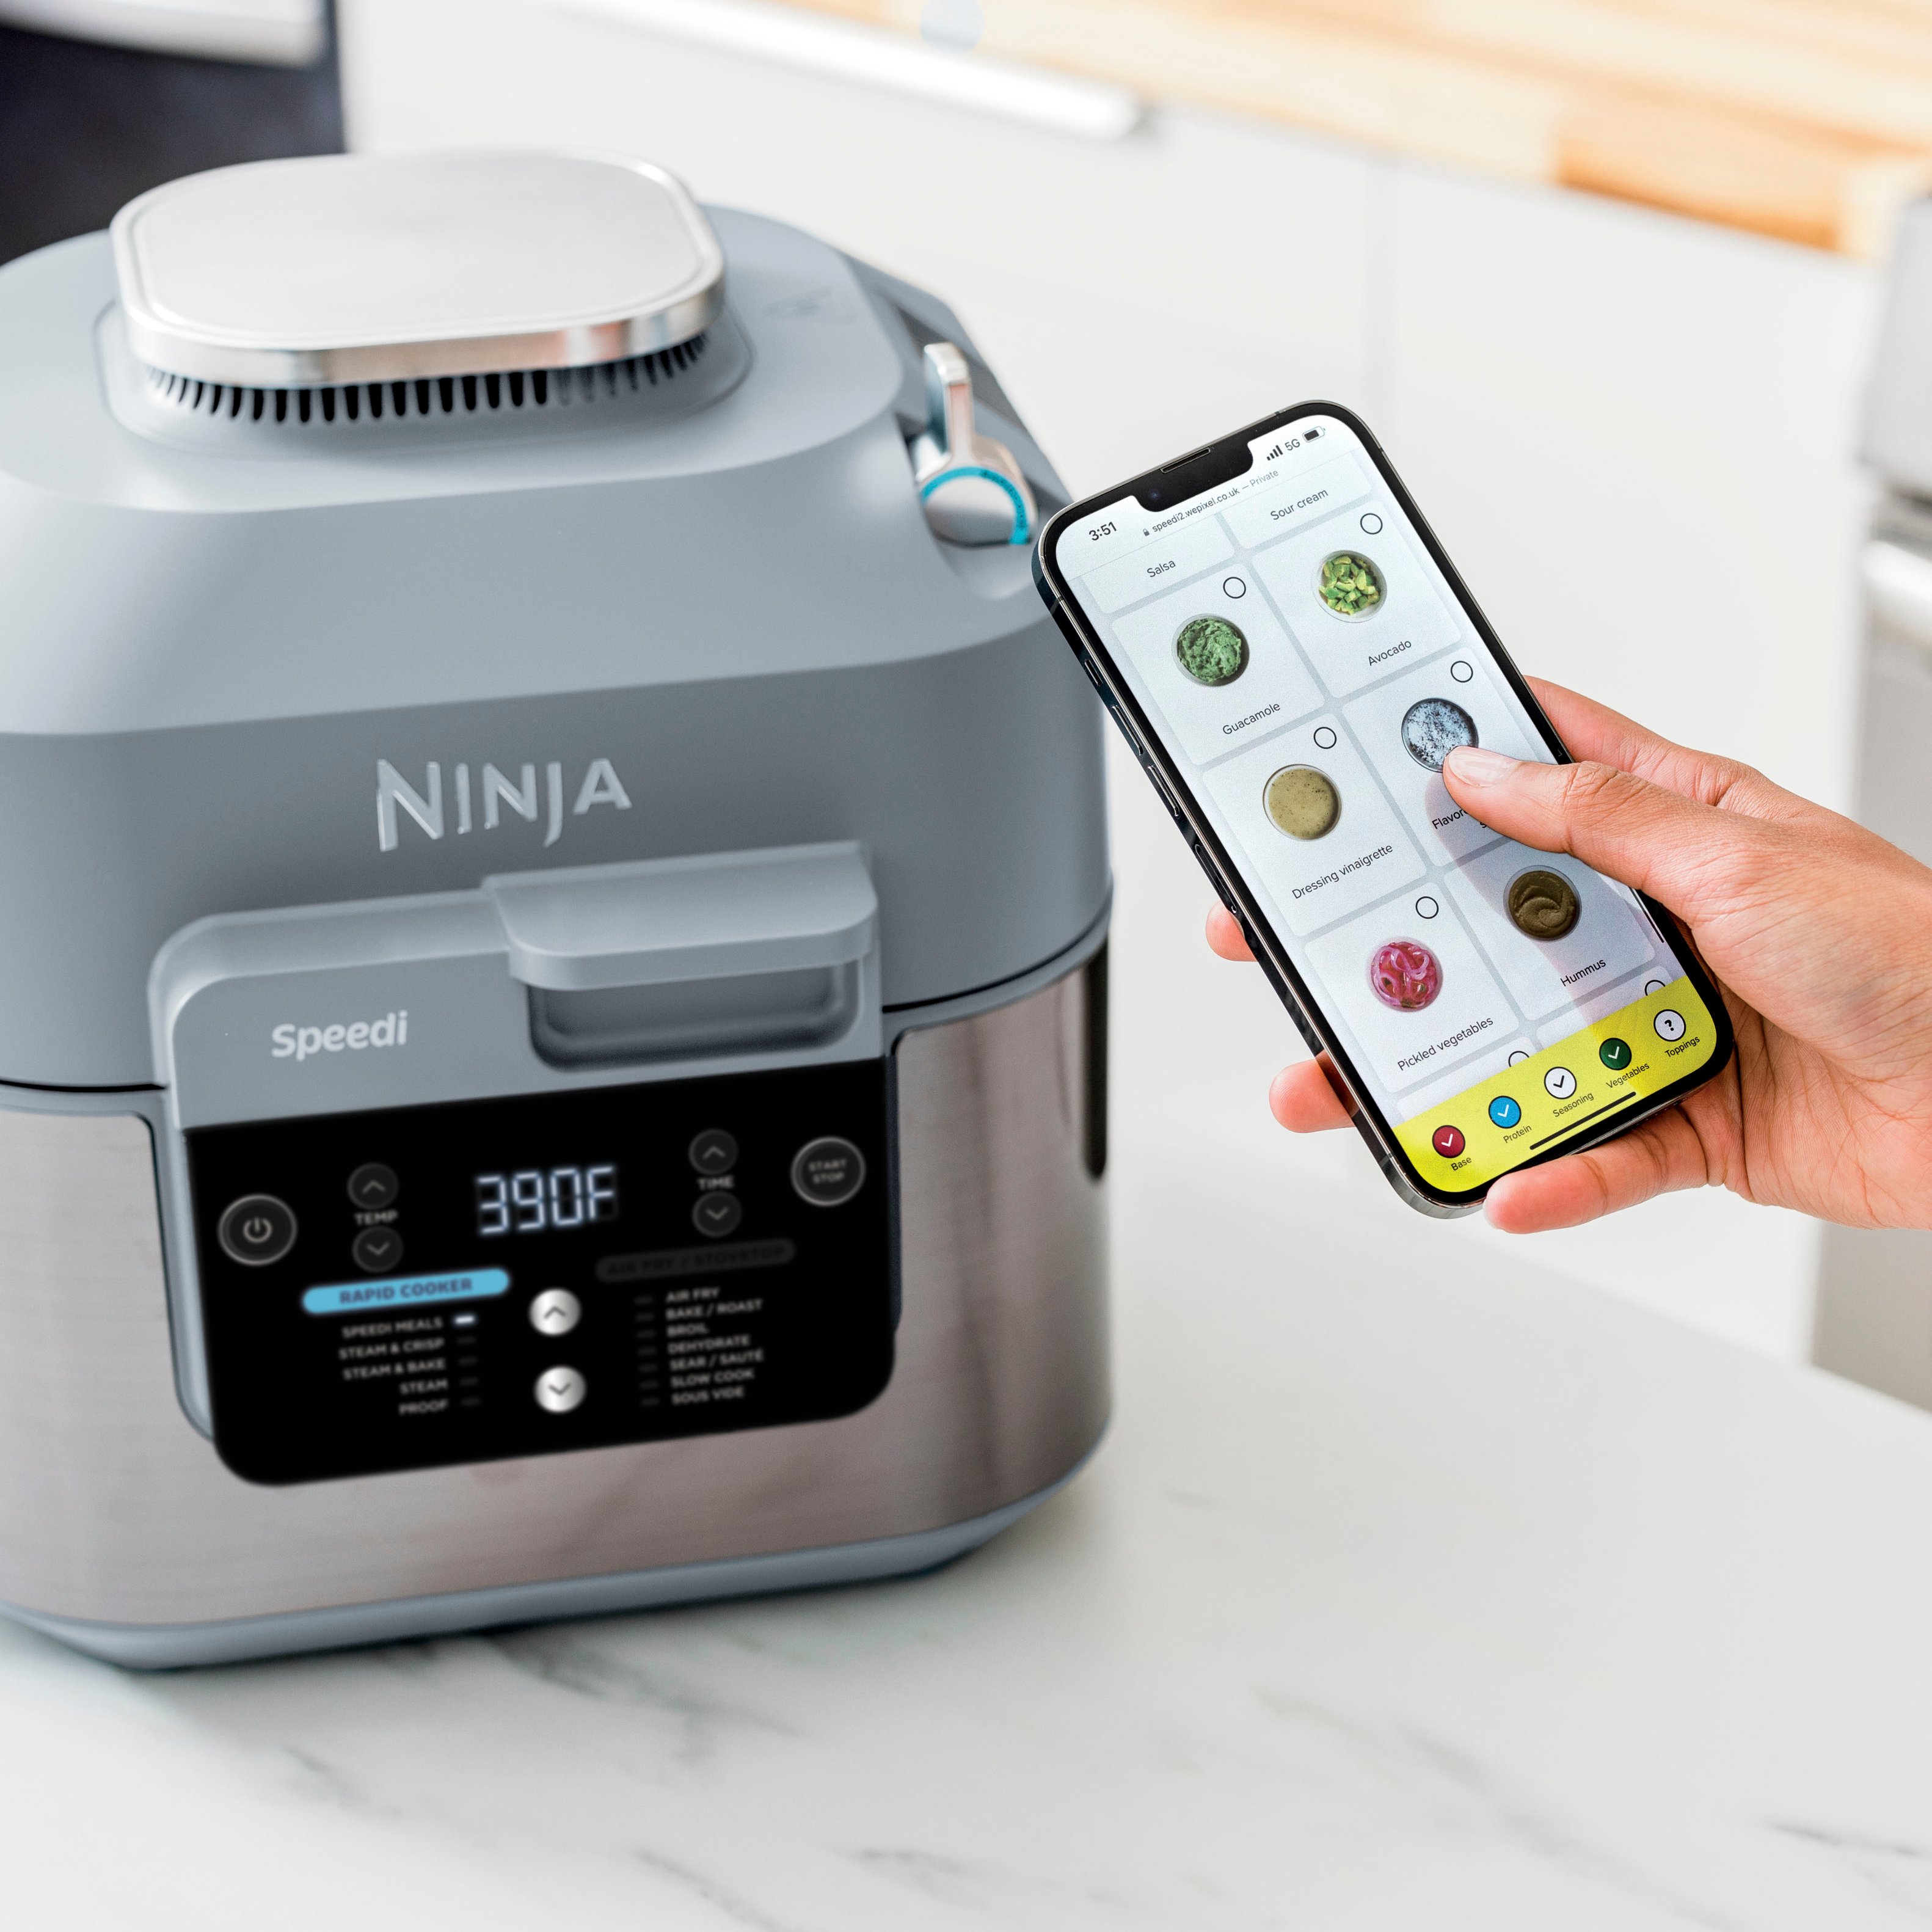 Best Buy: Ninja Foodi 6-qt. 5-in-1 2-Basket Air Fryer with